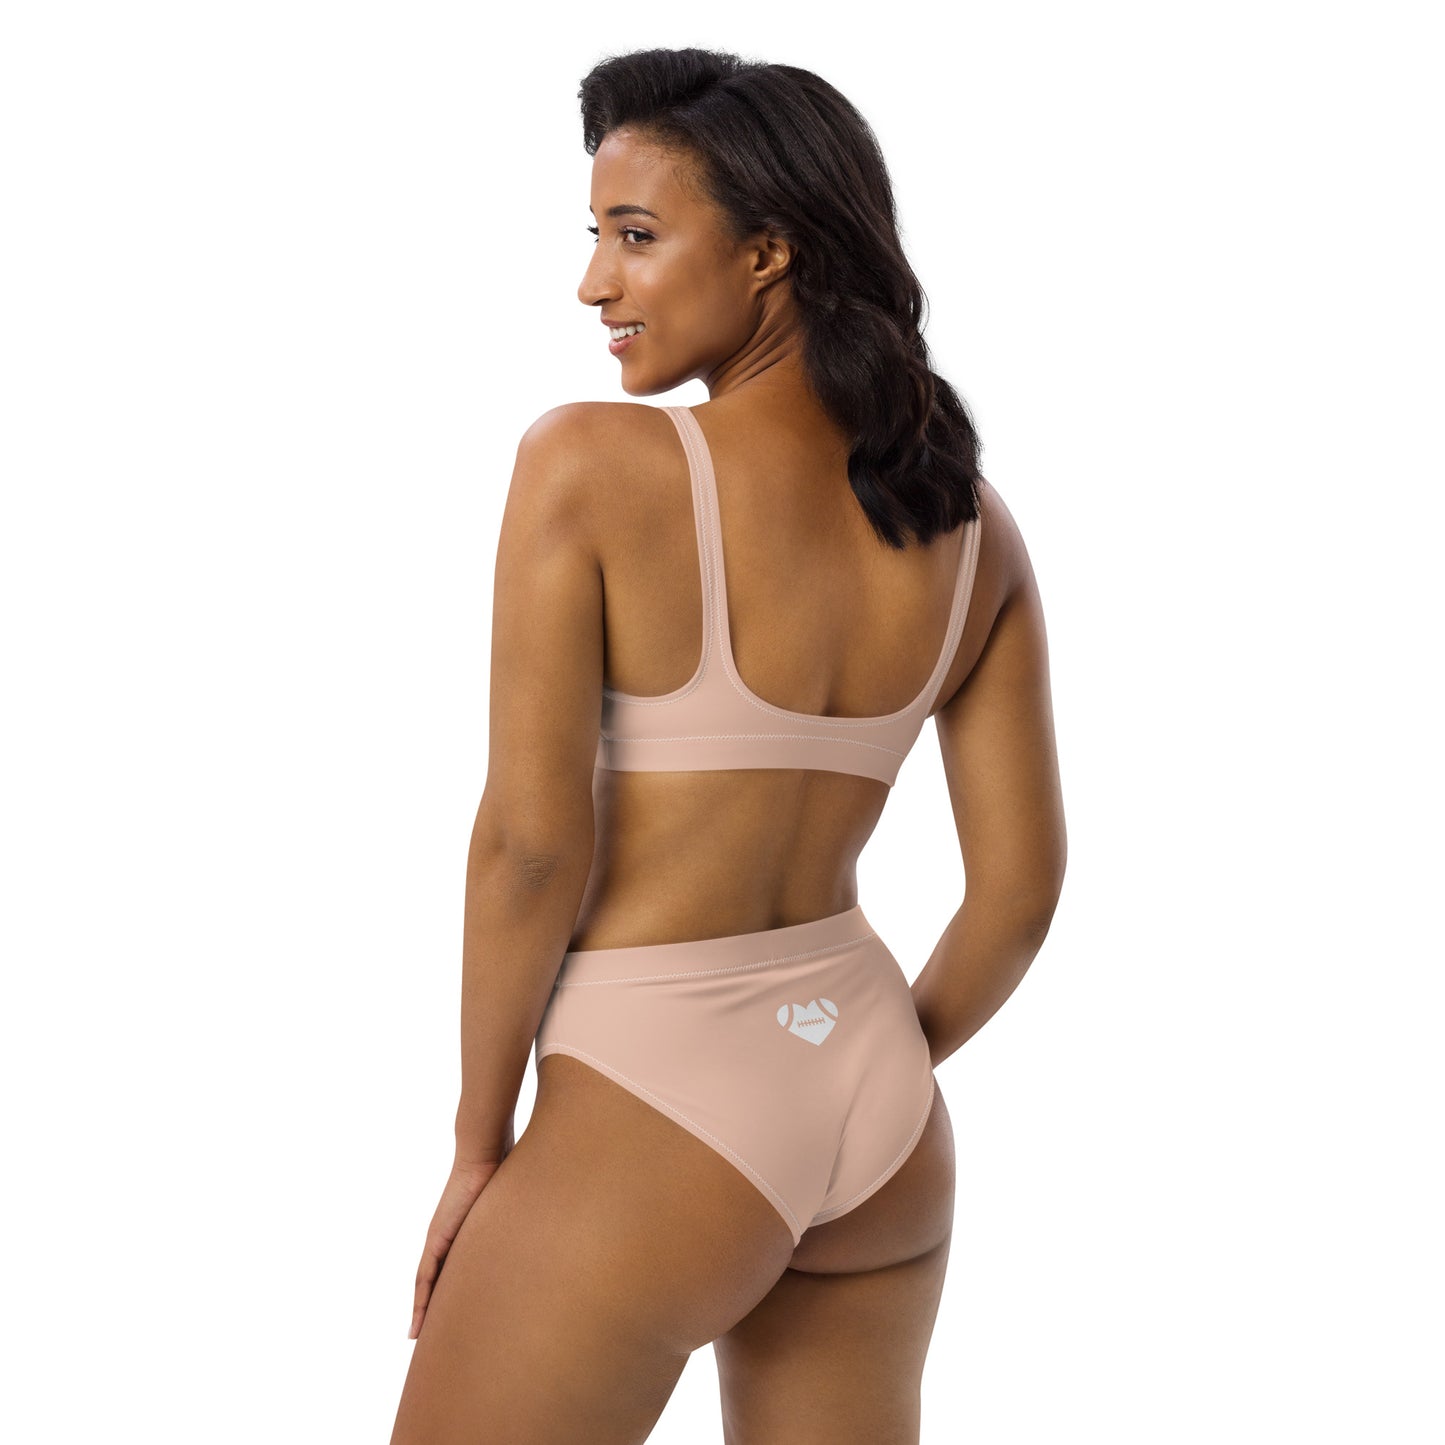 AFA Basics Neutral Zinnwaldite High-waisted Bikini